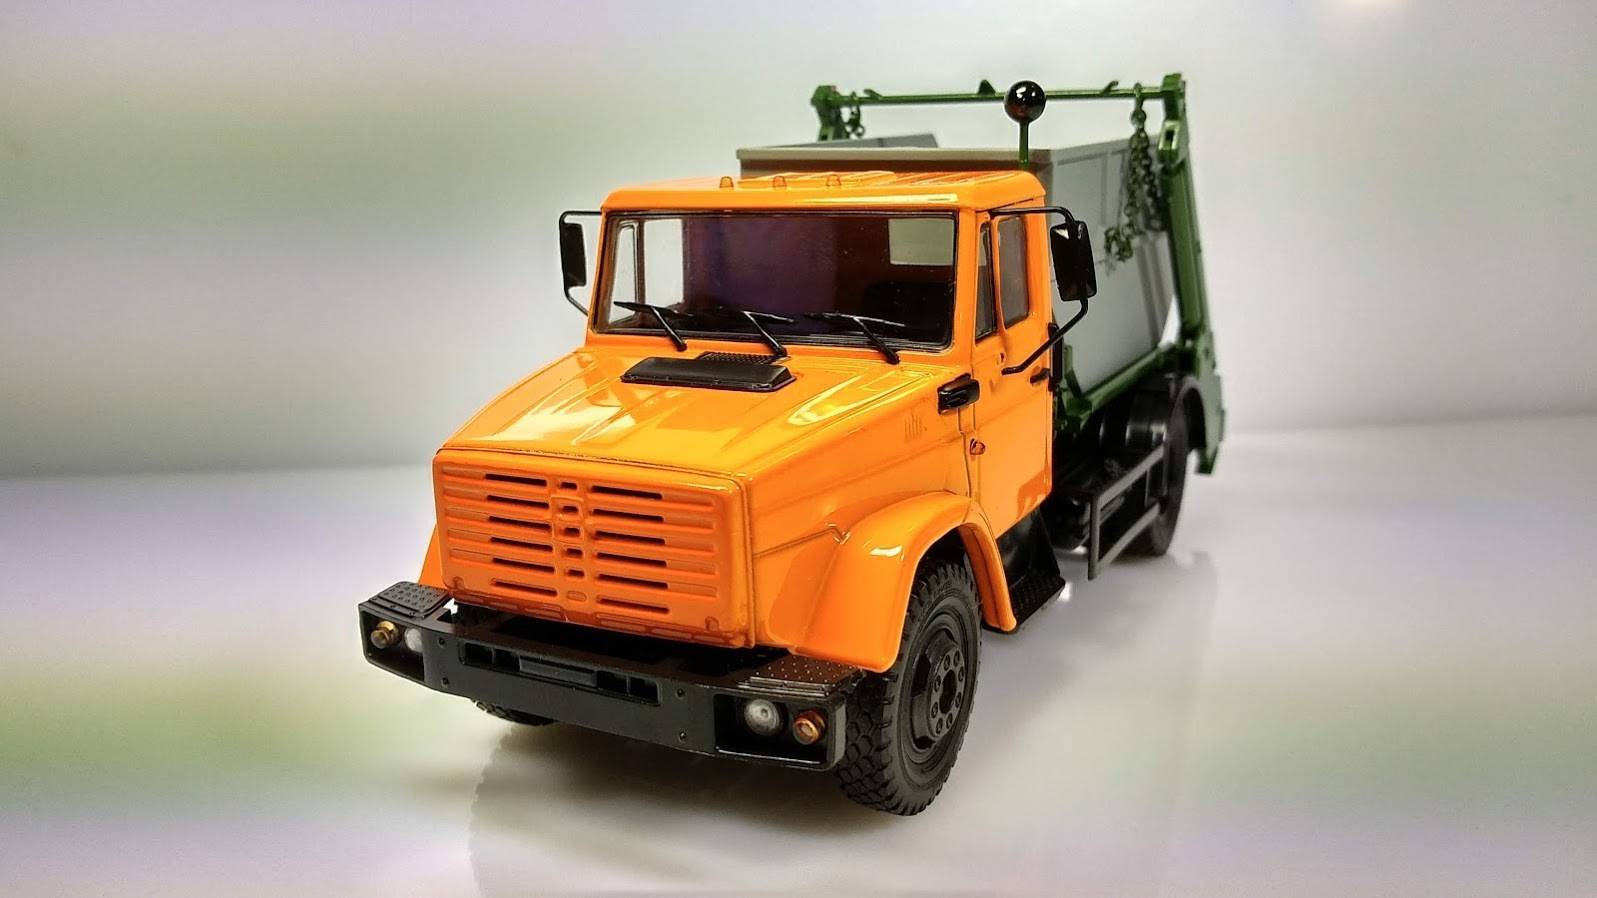 Технические характеристики грузовика зил-4333 и аналогичные среднетоннажные автомобили